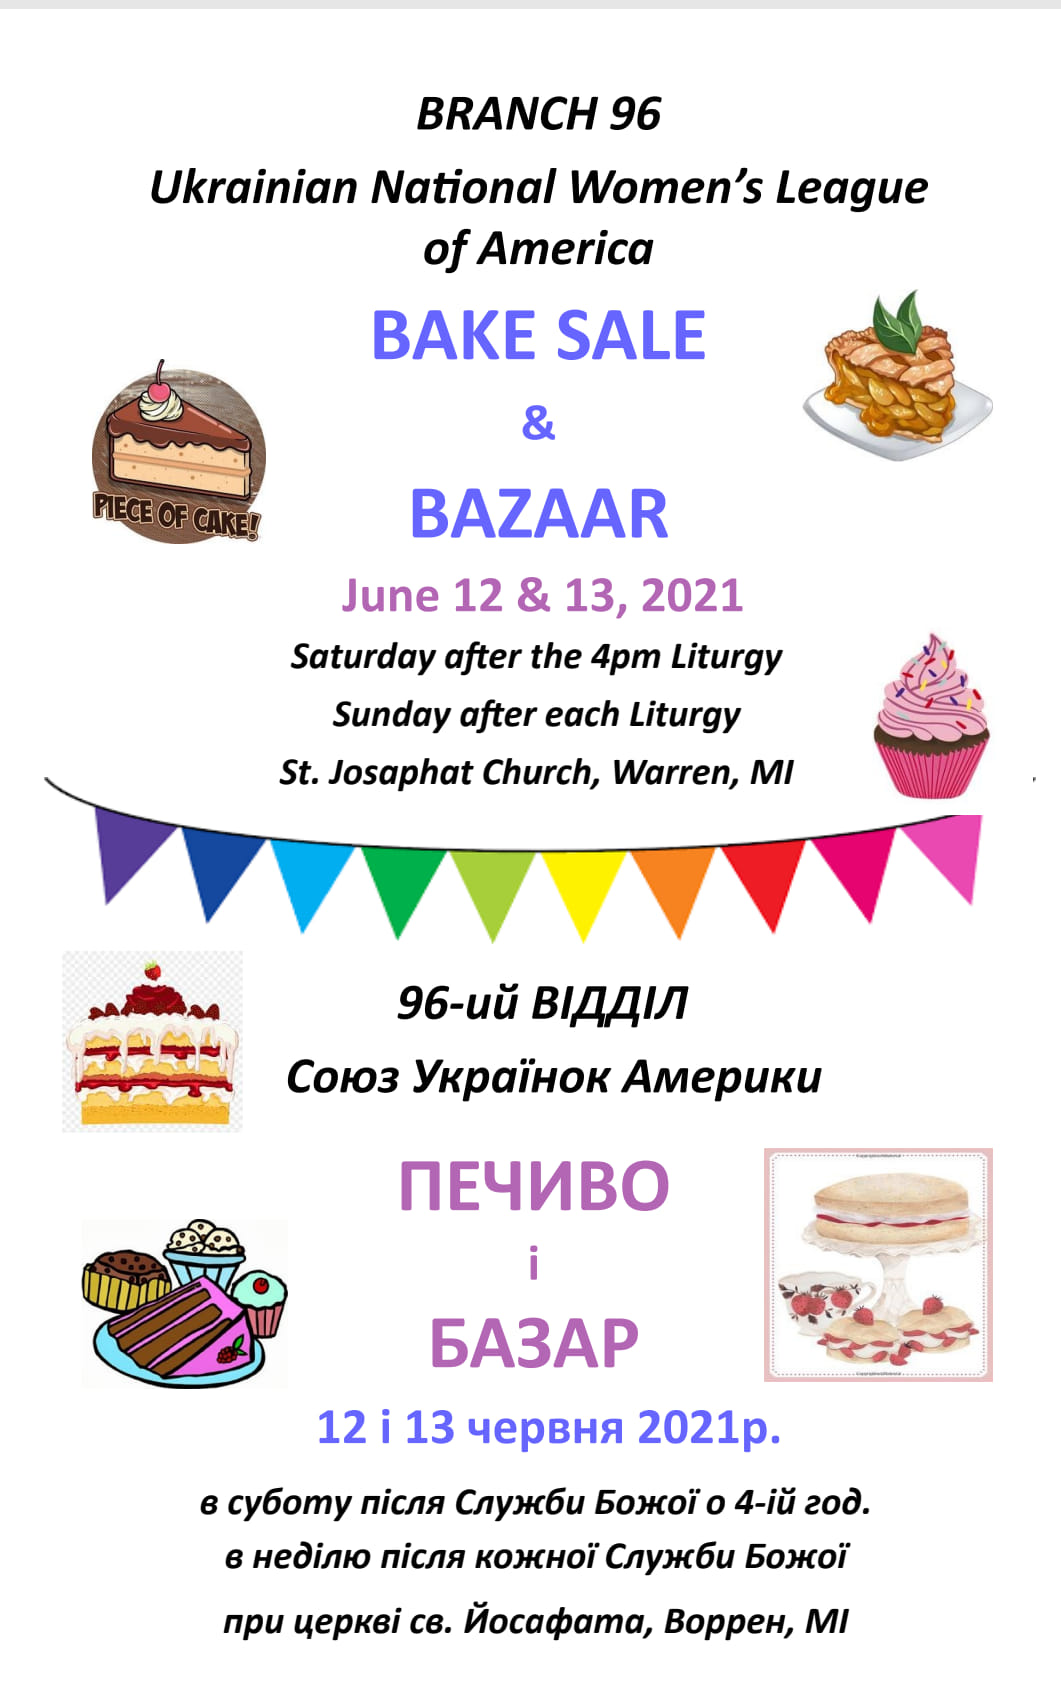 unwla 96 bake sale & bazaar posted by USMFCU